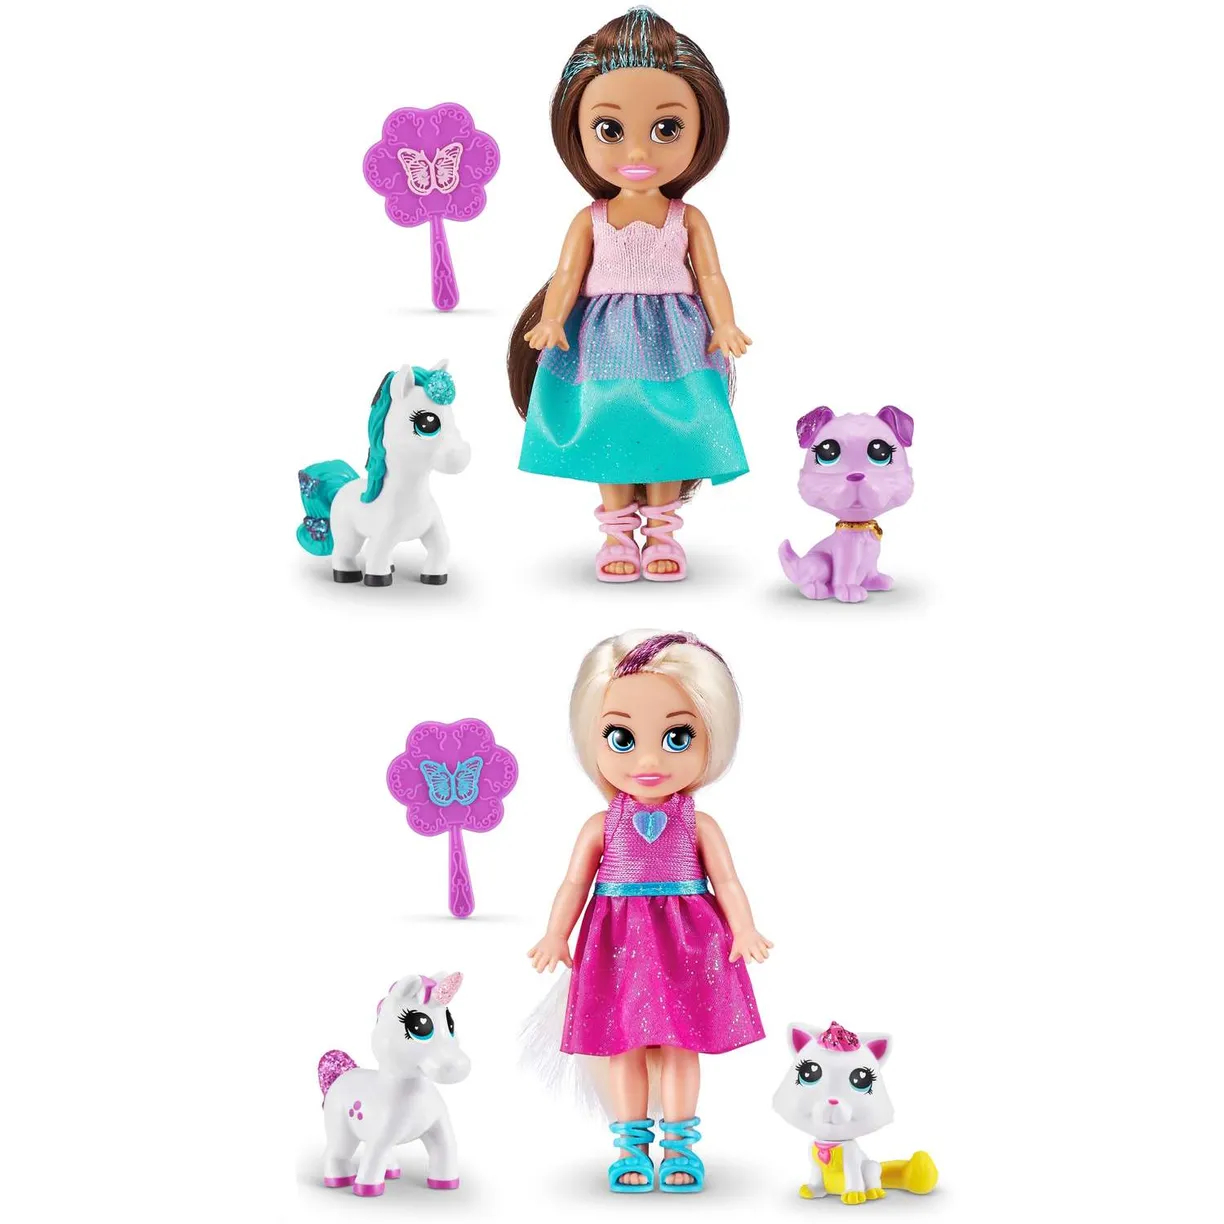 Набор игровой Sparkle Girlz Принцесса с питомцами в ассортименте кеды для куклы и набор по созданию сумочки